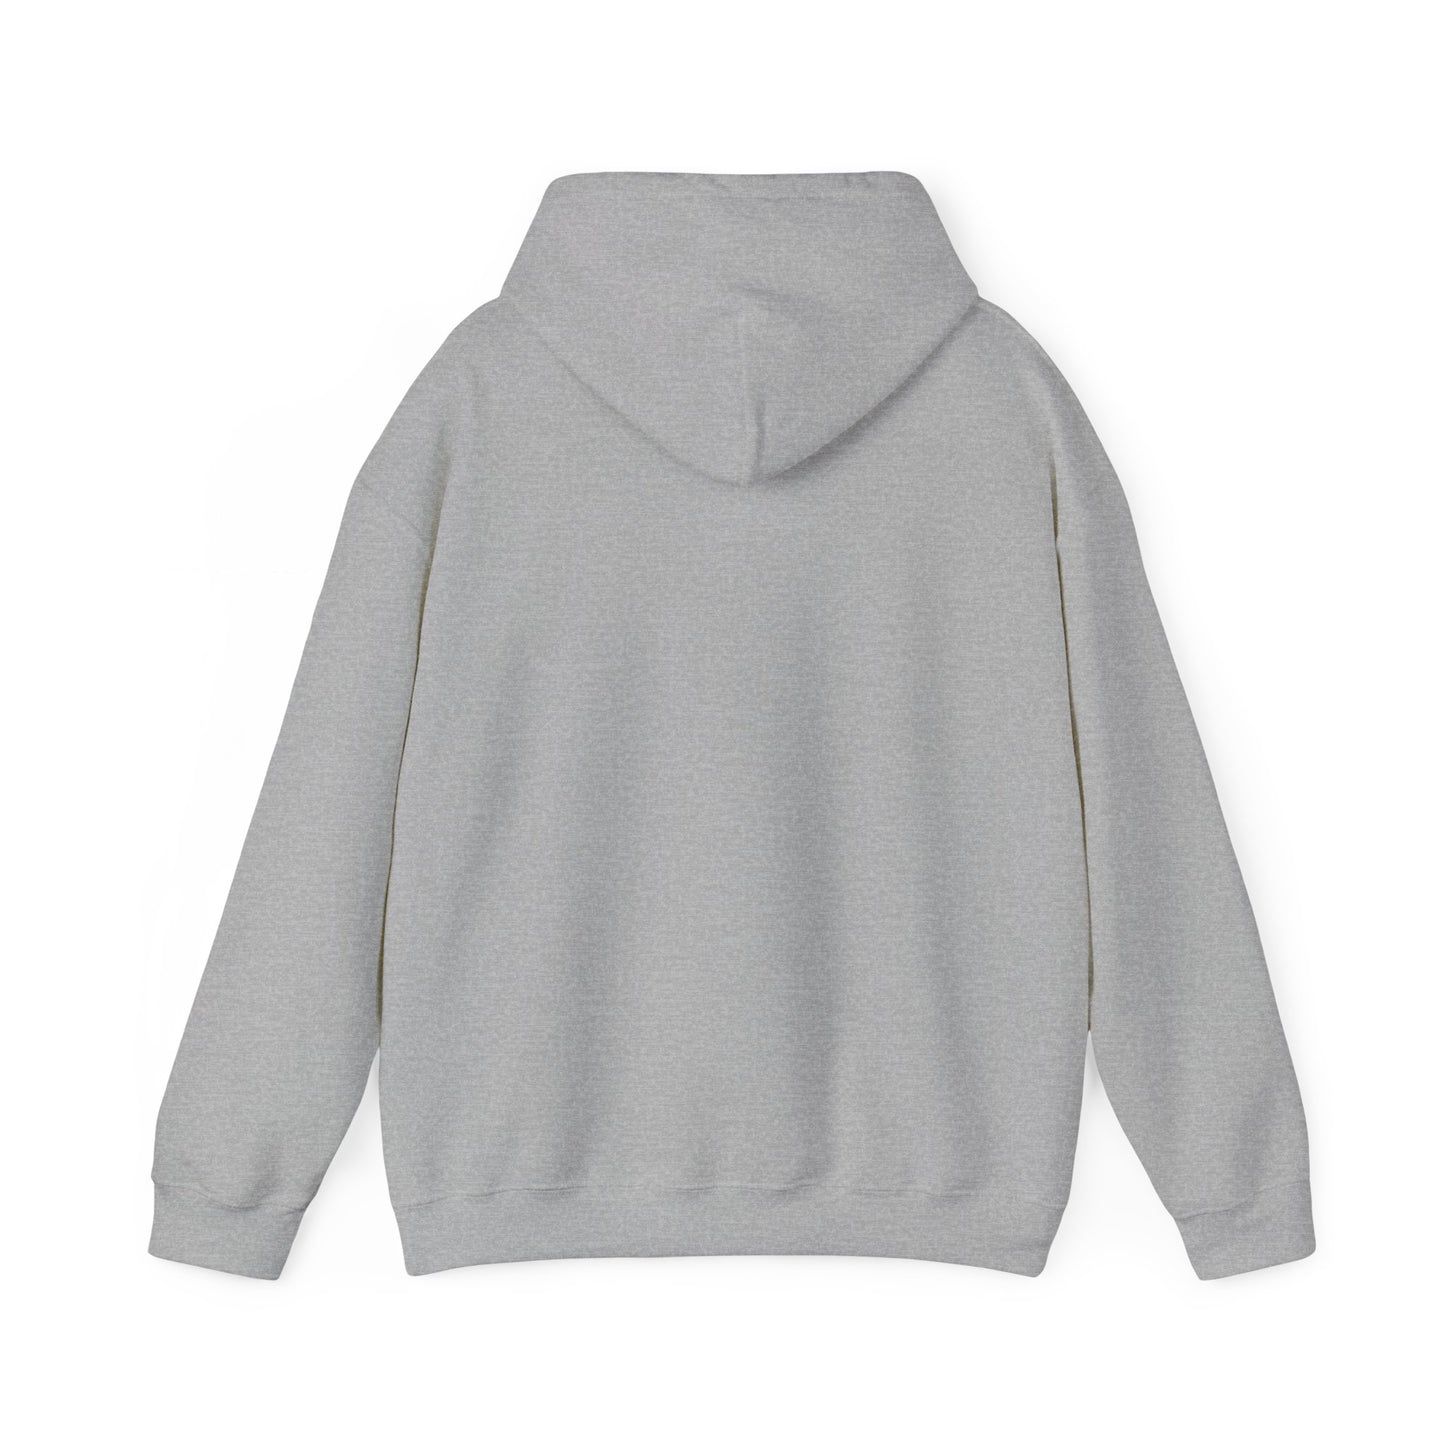 A Lot Can Happen Unisex Heavy Blend™ Hooded Sweatshirt